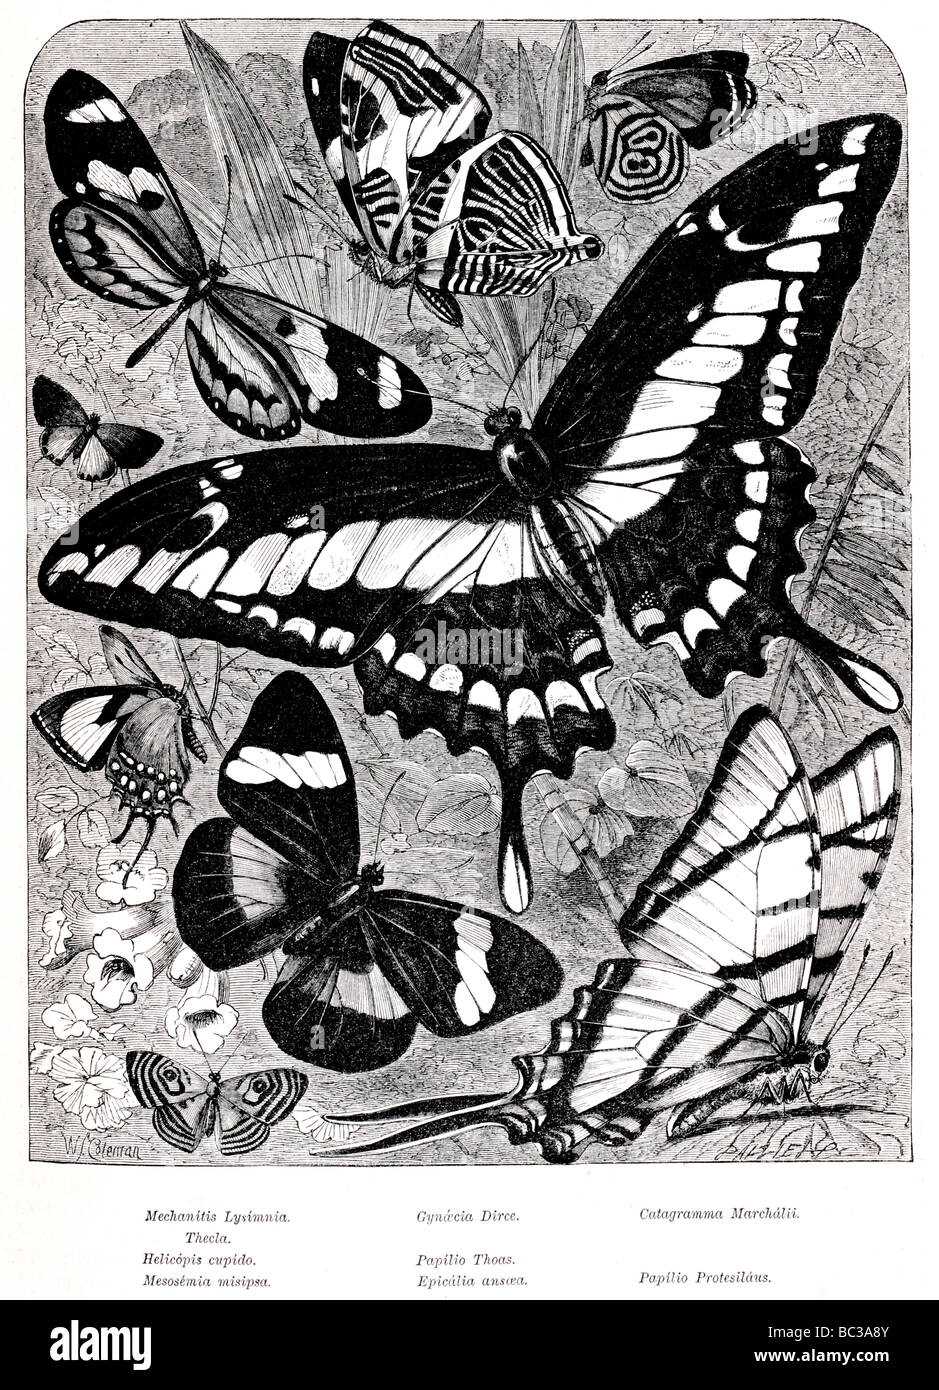 Mechanitis Lysimnia Gynaecia Dirce Catagramma Marchalii Thekla Helicopis Cupido Papilio Thoas Mesosemia Misipsa Epicalia papilio Stockfoto